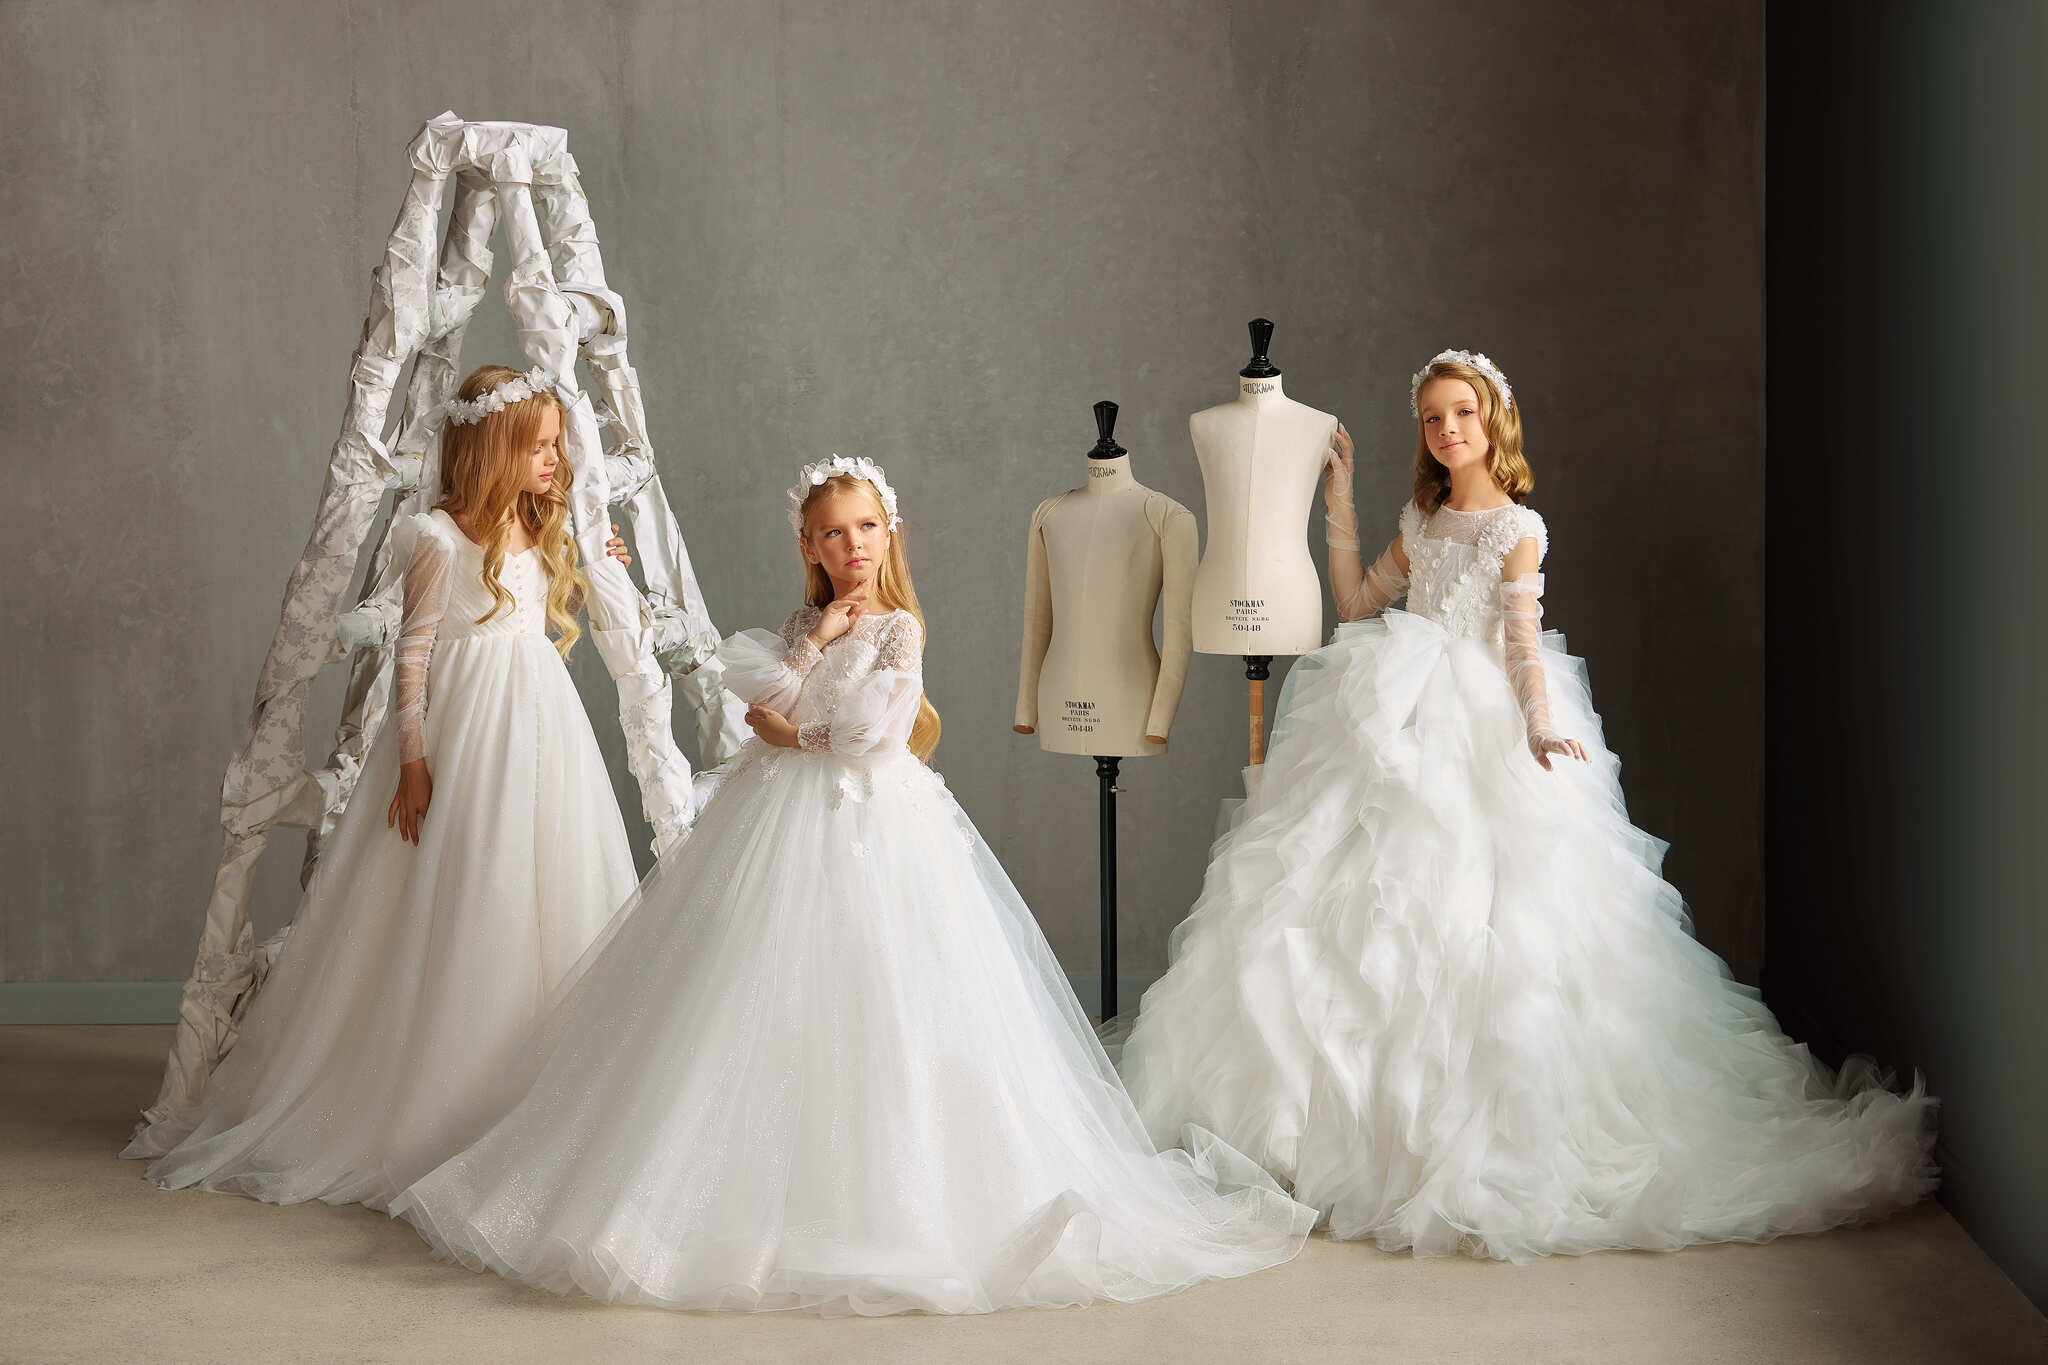 New White Dress Stylish Elegant Little Girls Sleeveless Birthday